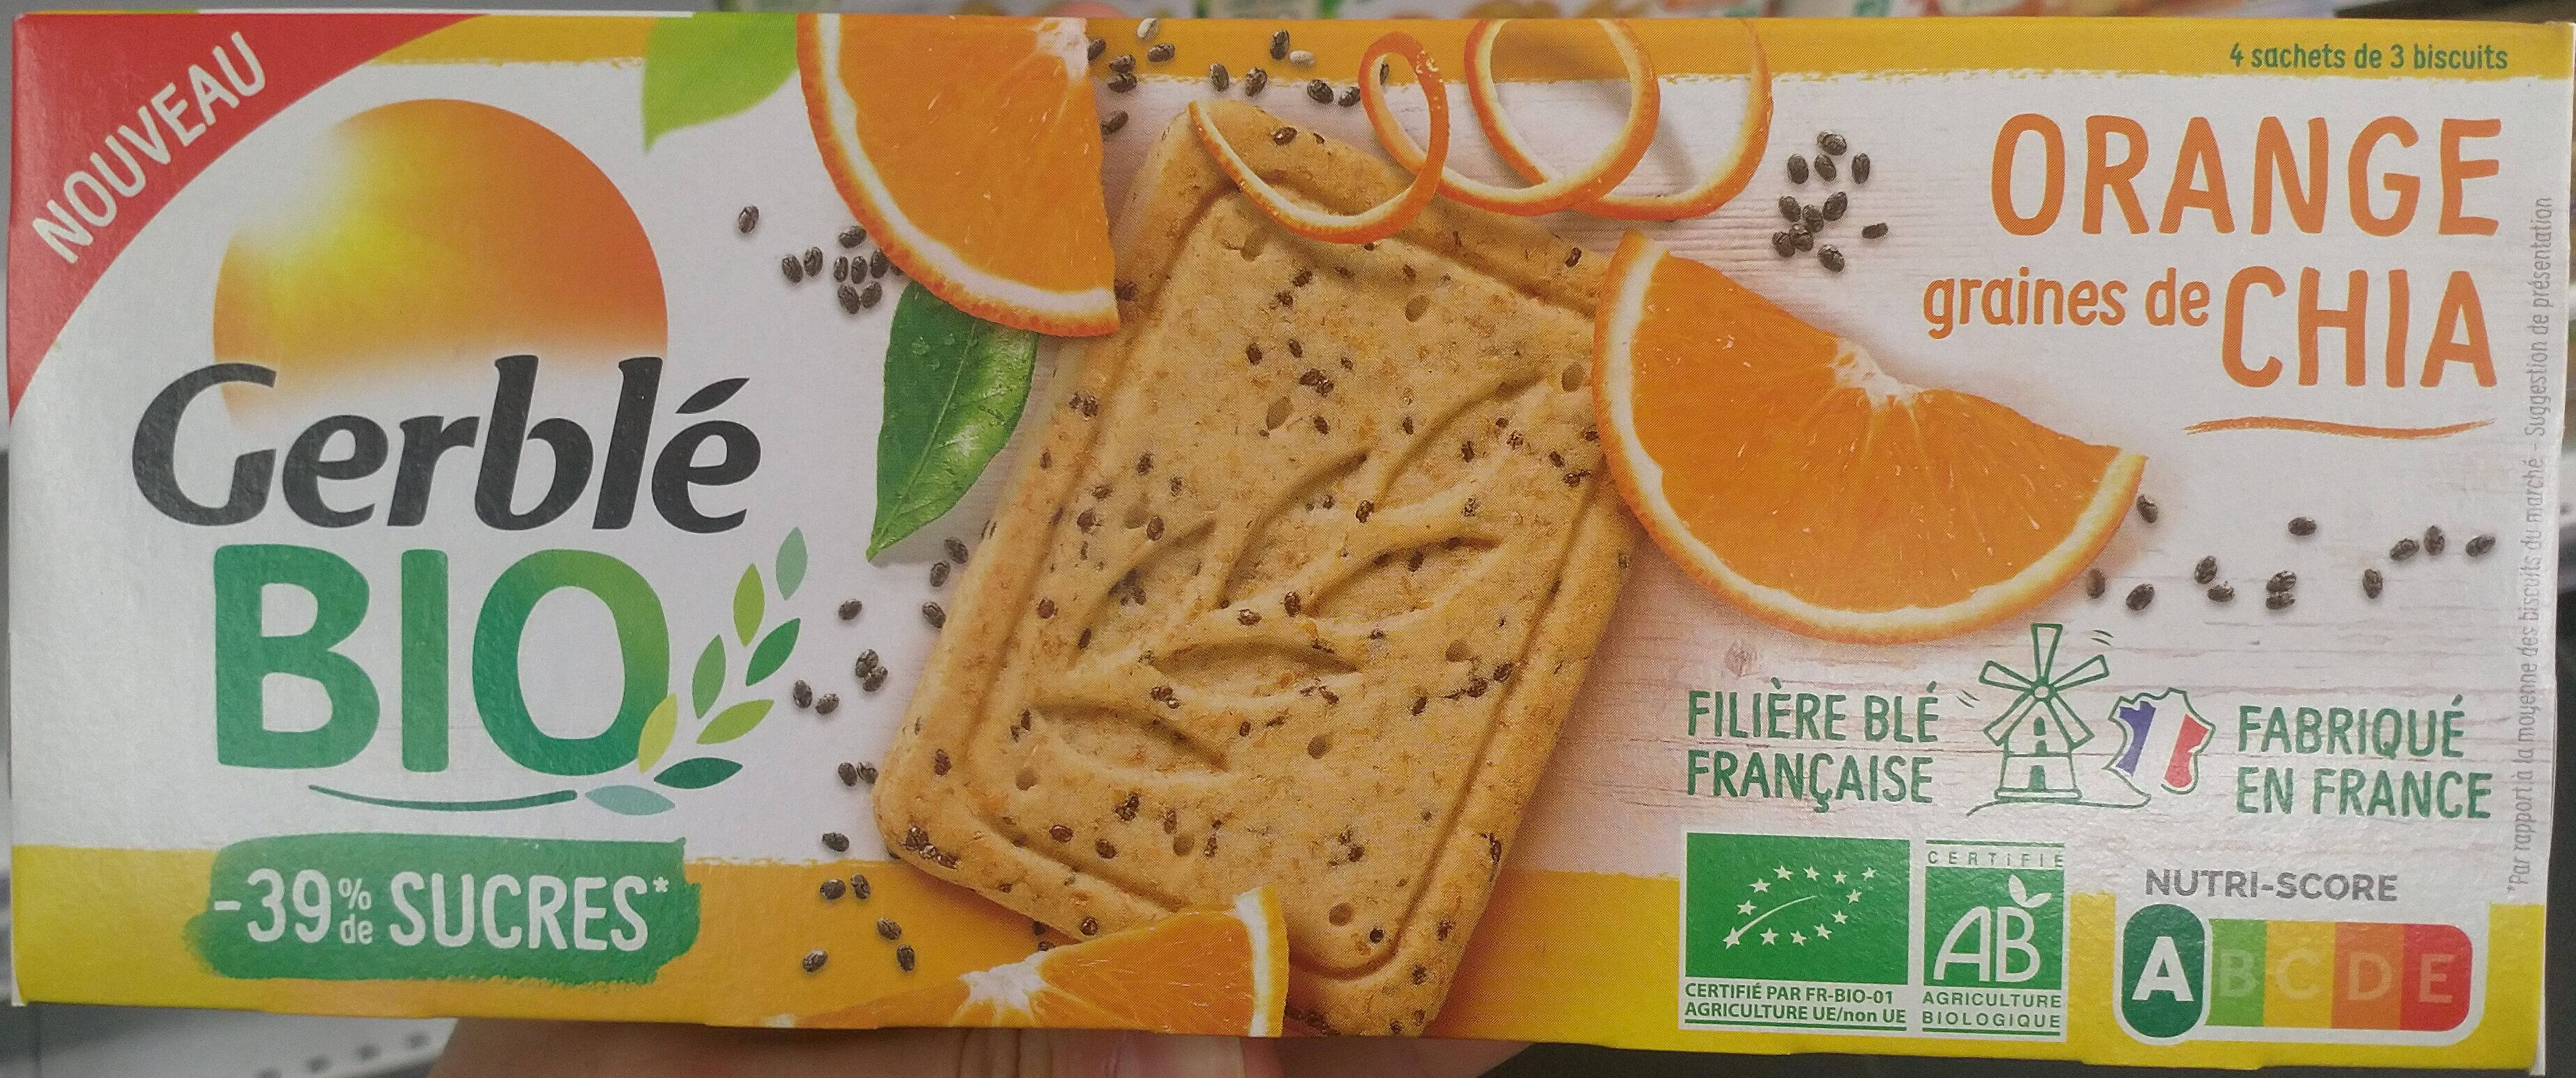 Biscuits à l'orange Orange et au graines de Chia - Produit